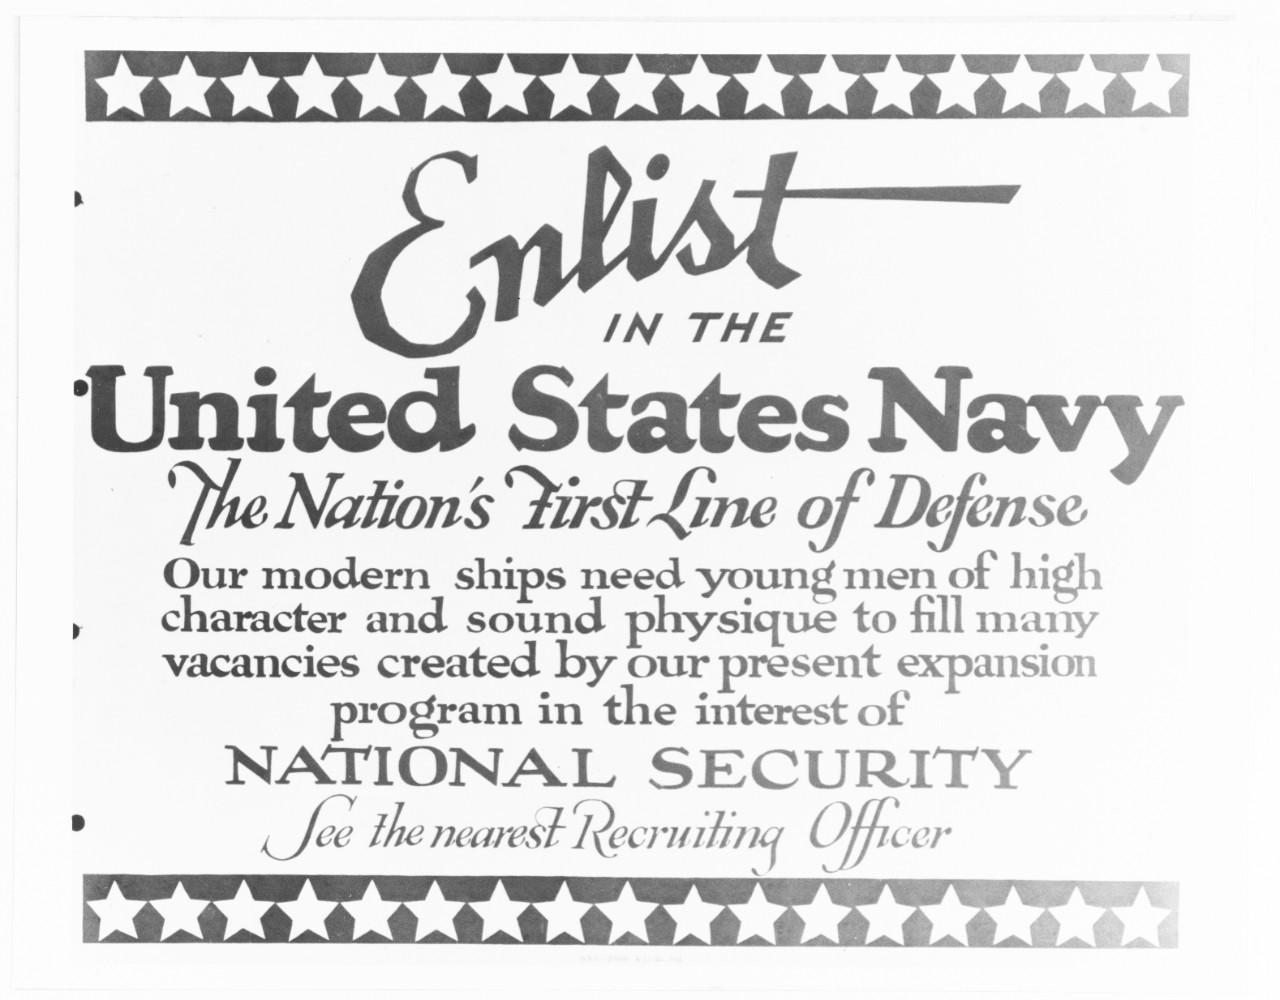 Navy poster, "Enlist"